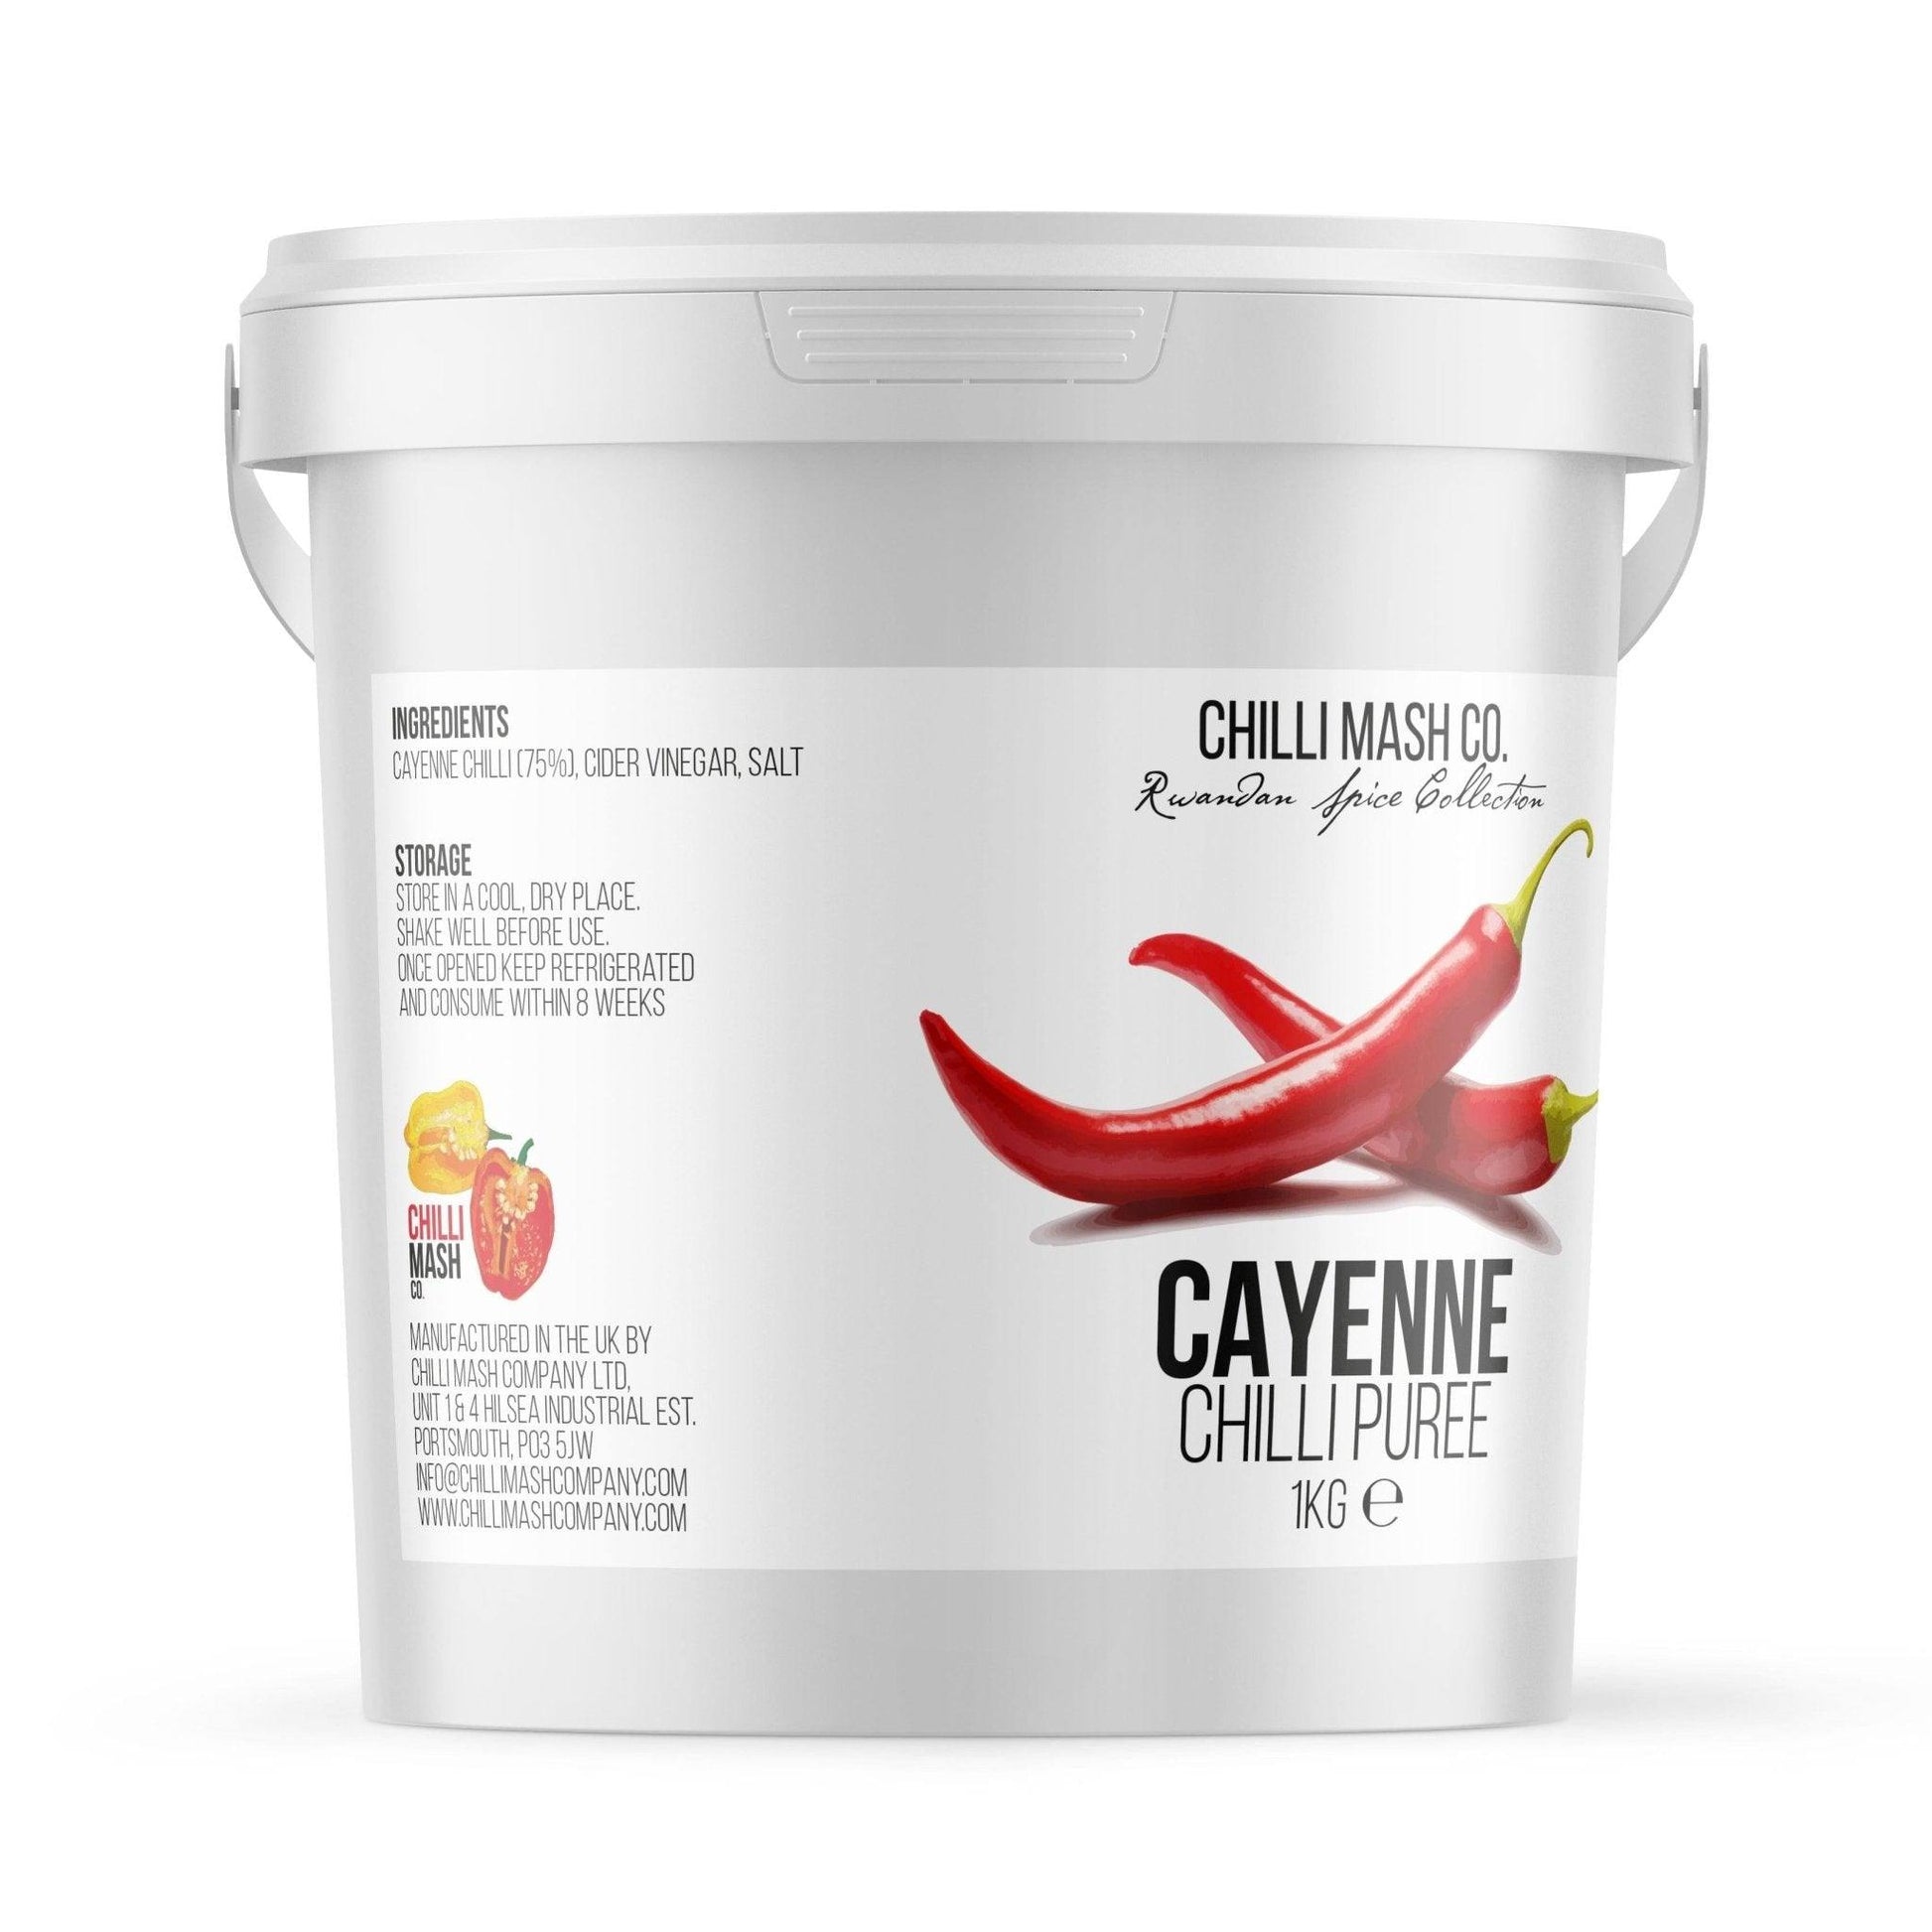 Cayenne Chilli Puree | 1kg | Chilli Mash Company - One Stop Chilli Shop